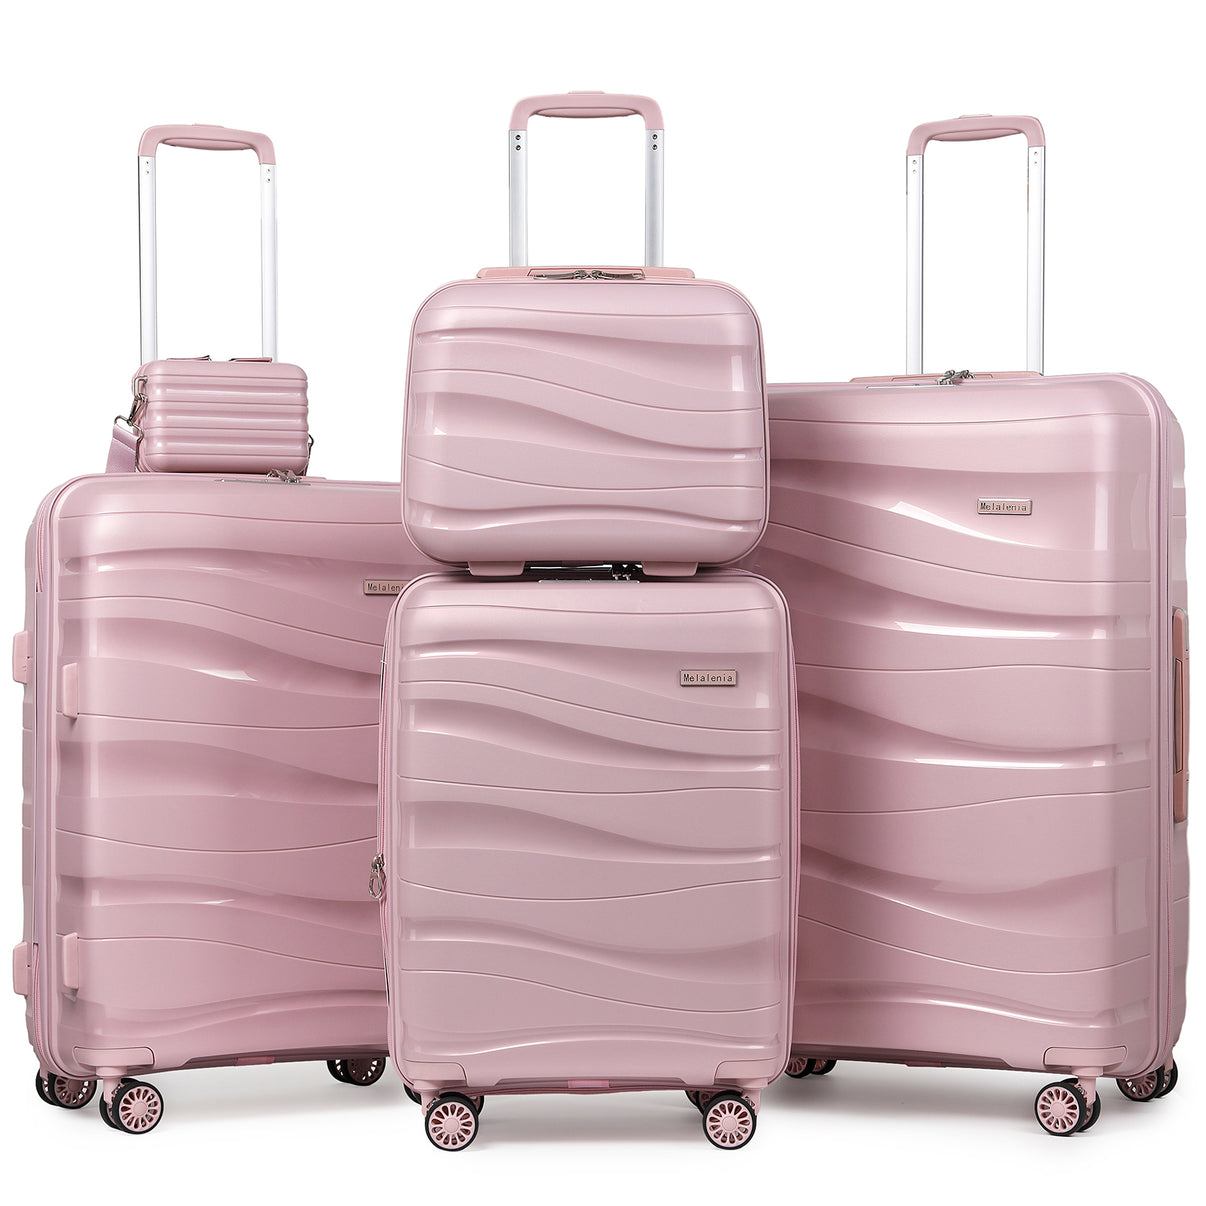 Joyway - Best Luggage - 3 Pieces Luggage Set Expandable Hard Shell ...